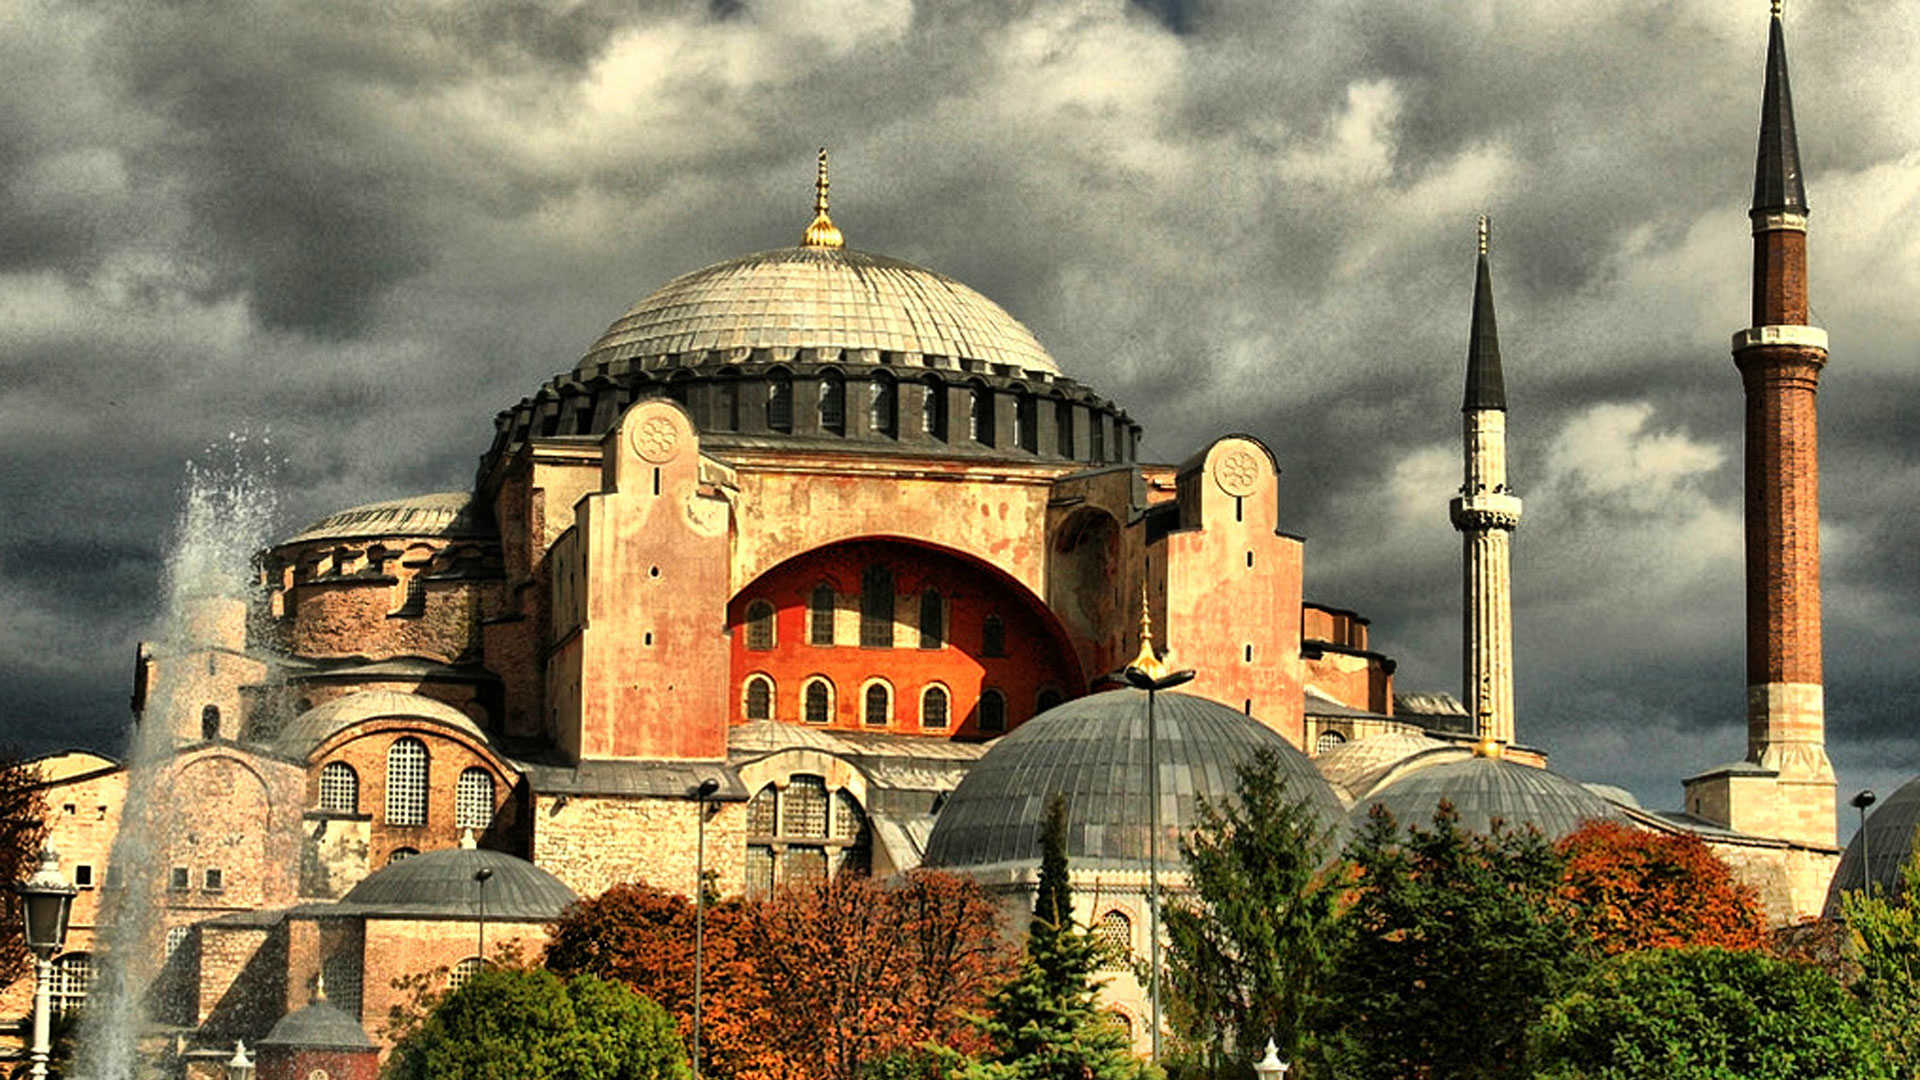 Νέα σοβαρή πρόκληση από την Τουρκία: Διόρισε μόνιμο ιμάμη στην Αγία Σοφία